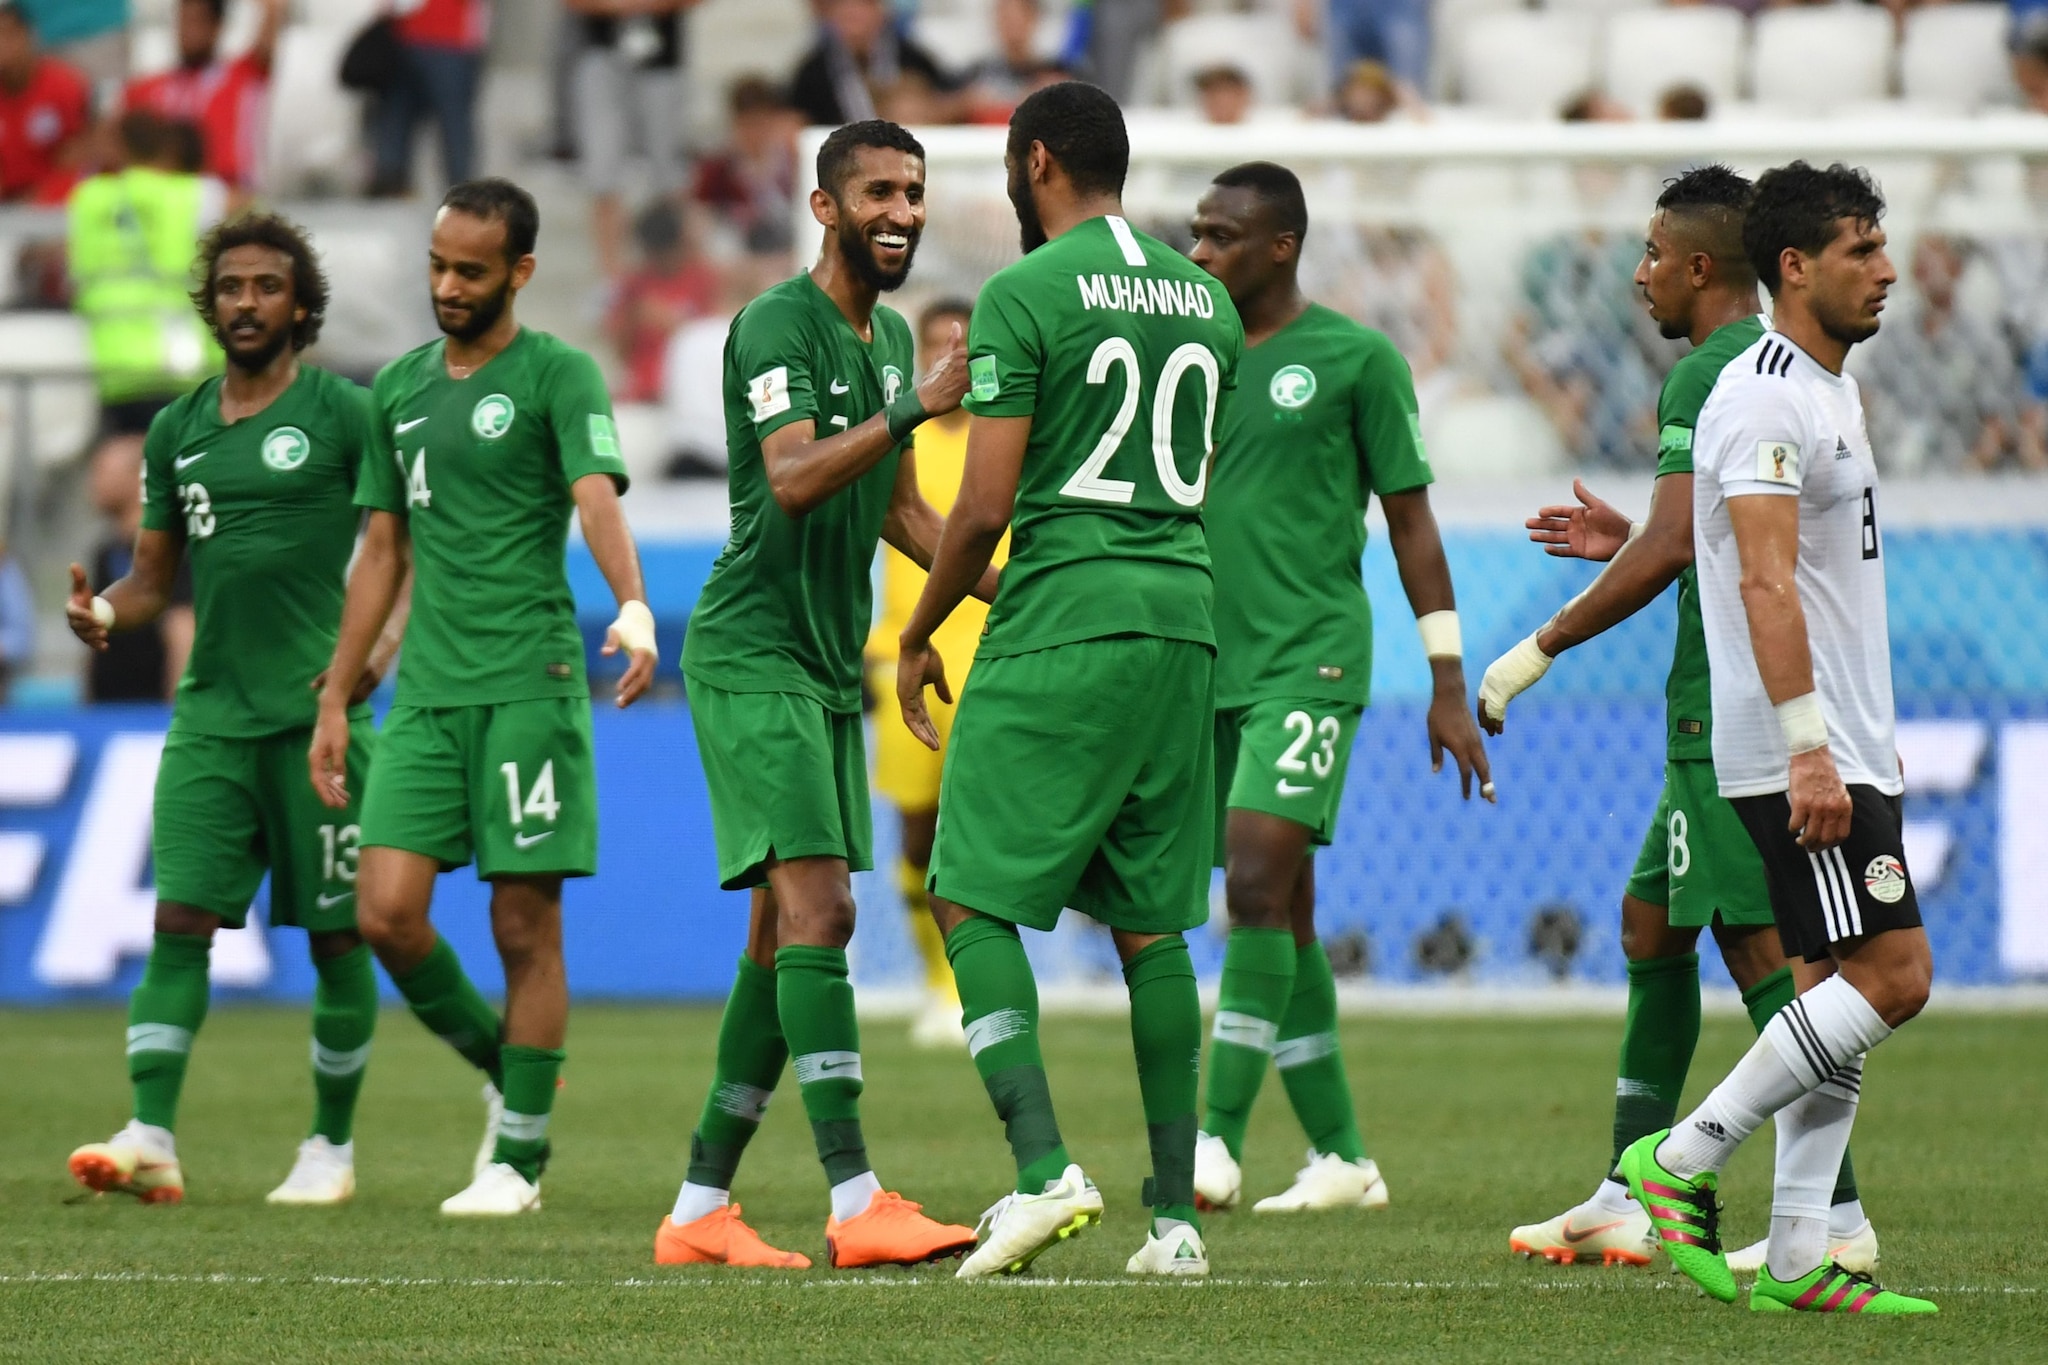 沙特阿拉伯国家队高清直播在线免费观看,国际米兰,巴塞罗那,世界杯前瞻,世界杯